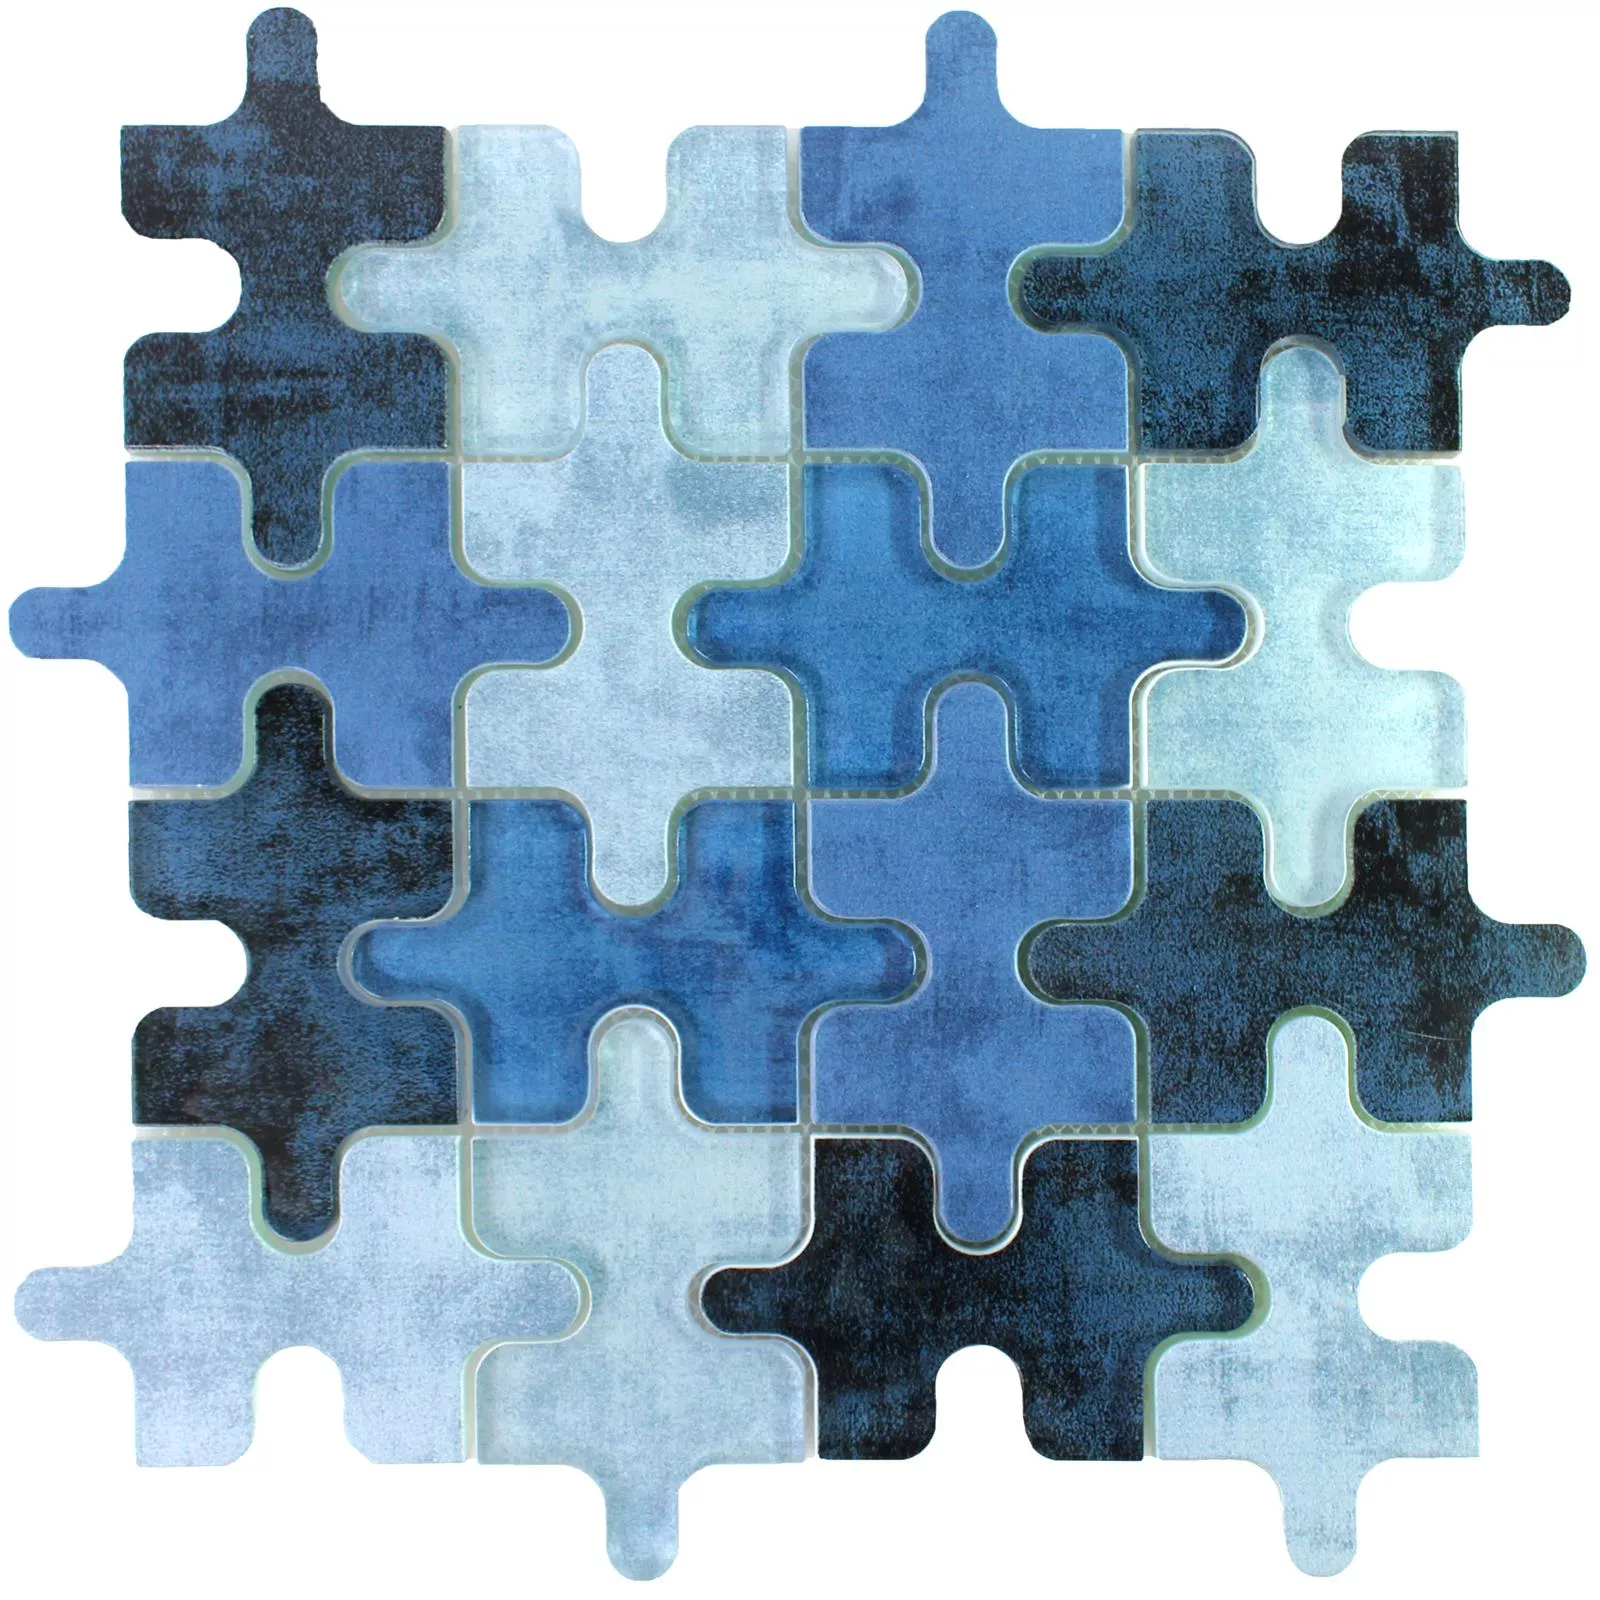 Sample Glass Mosaic Tiles Puzzle Blue